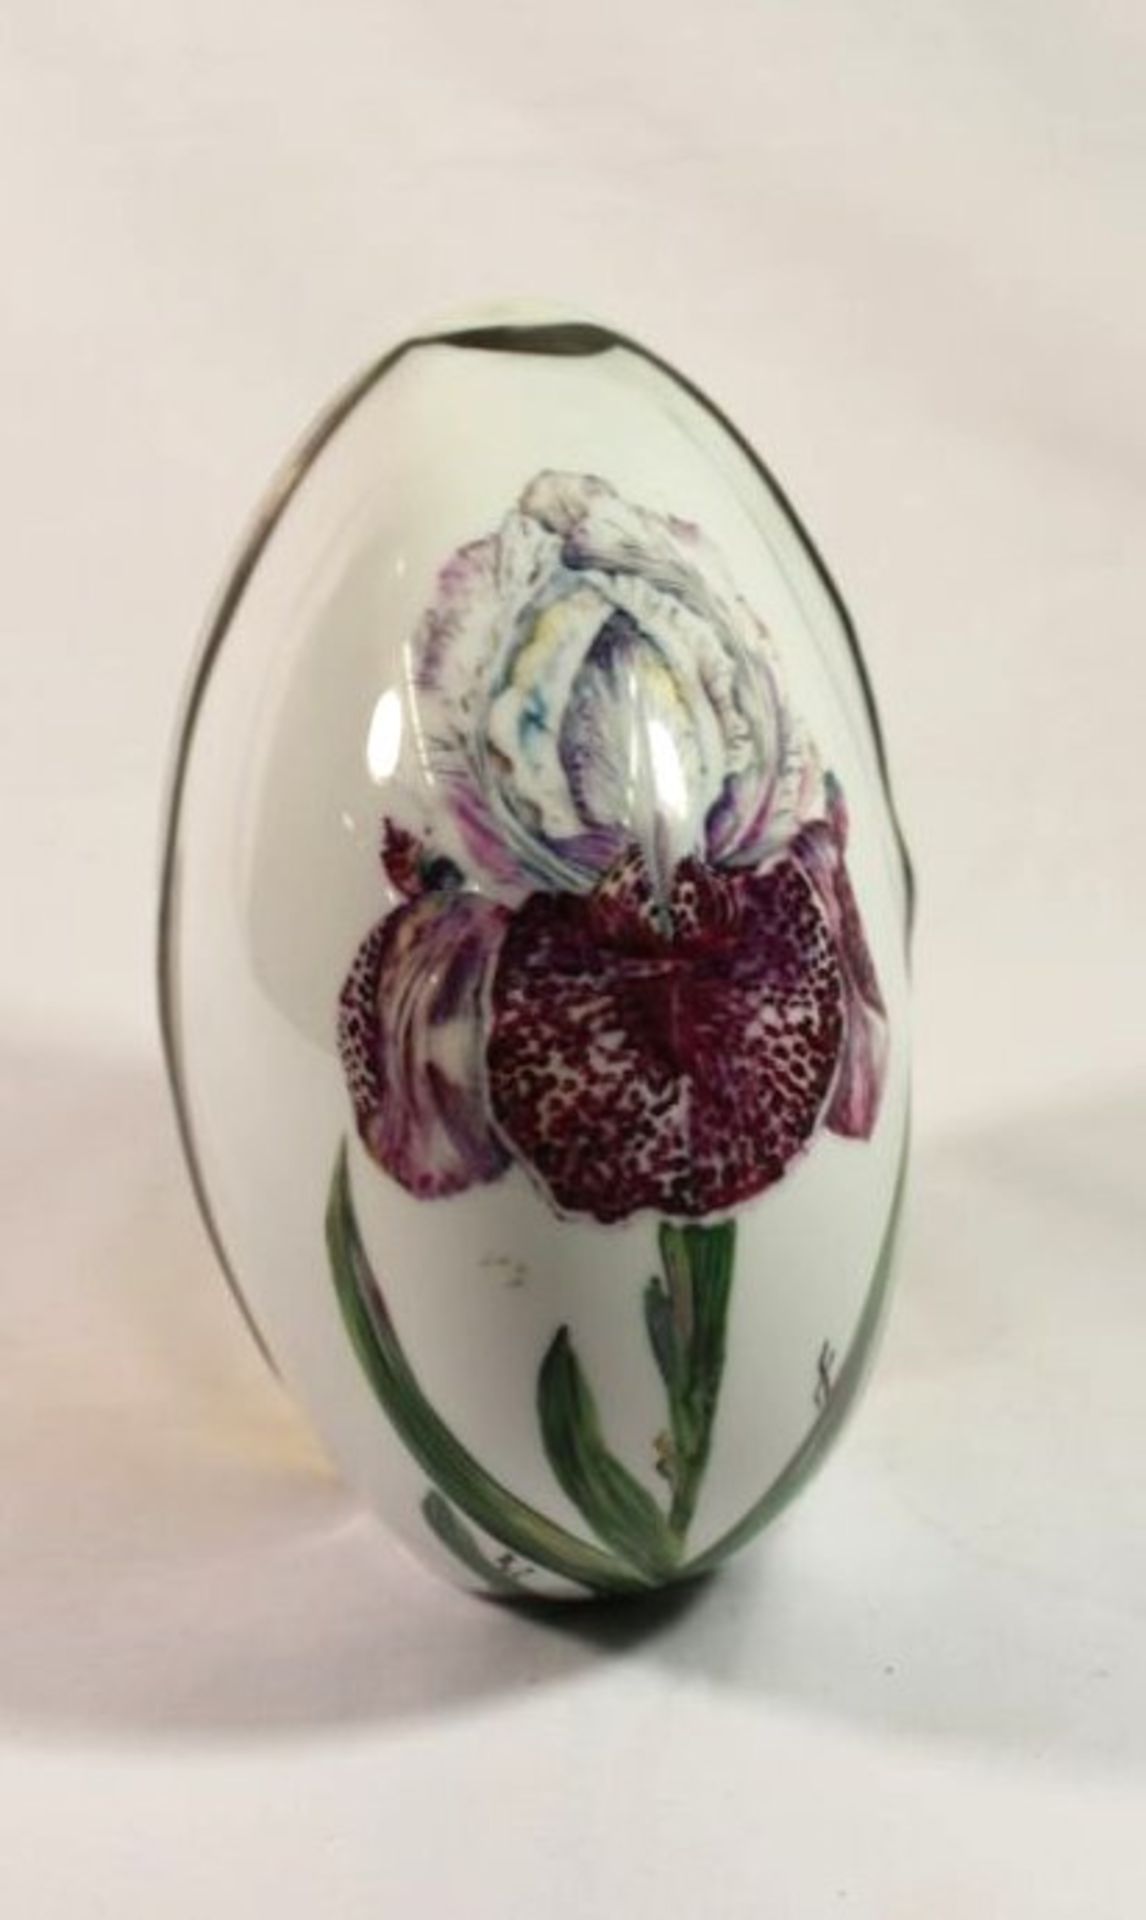 handbemalte Hutschenreuther-Vase, signiert,betitelt und datiert, Iris Mühe '87, H-18,5cm B-18cm. - Bild 2 aus 5